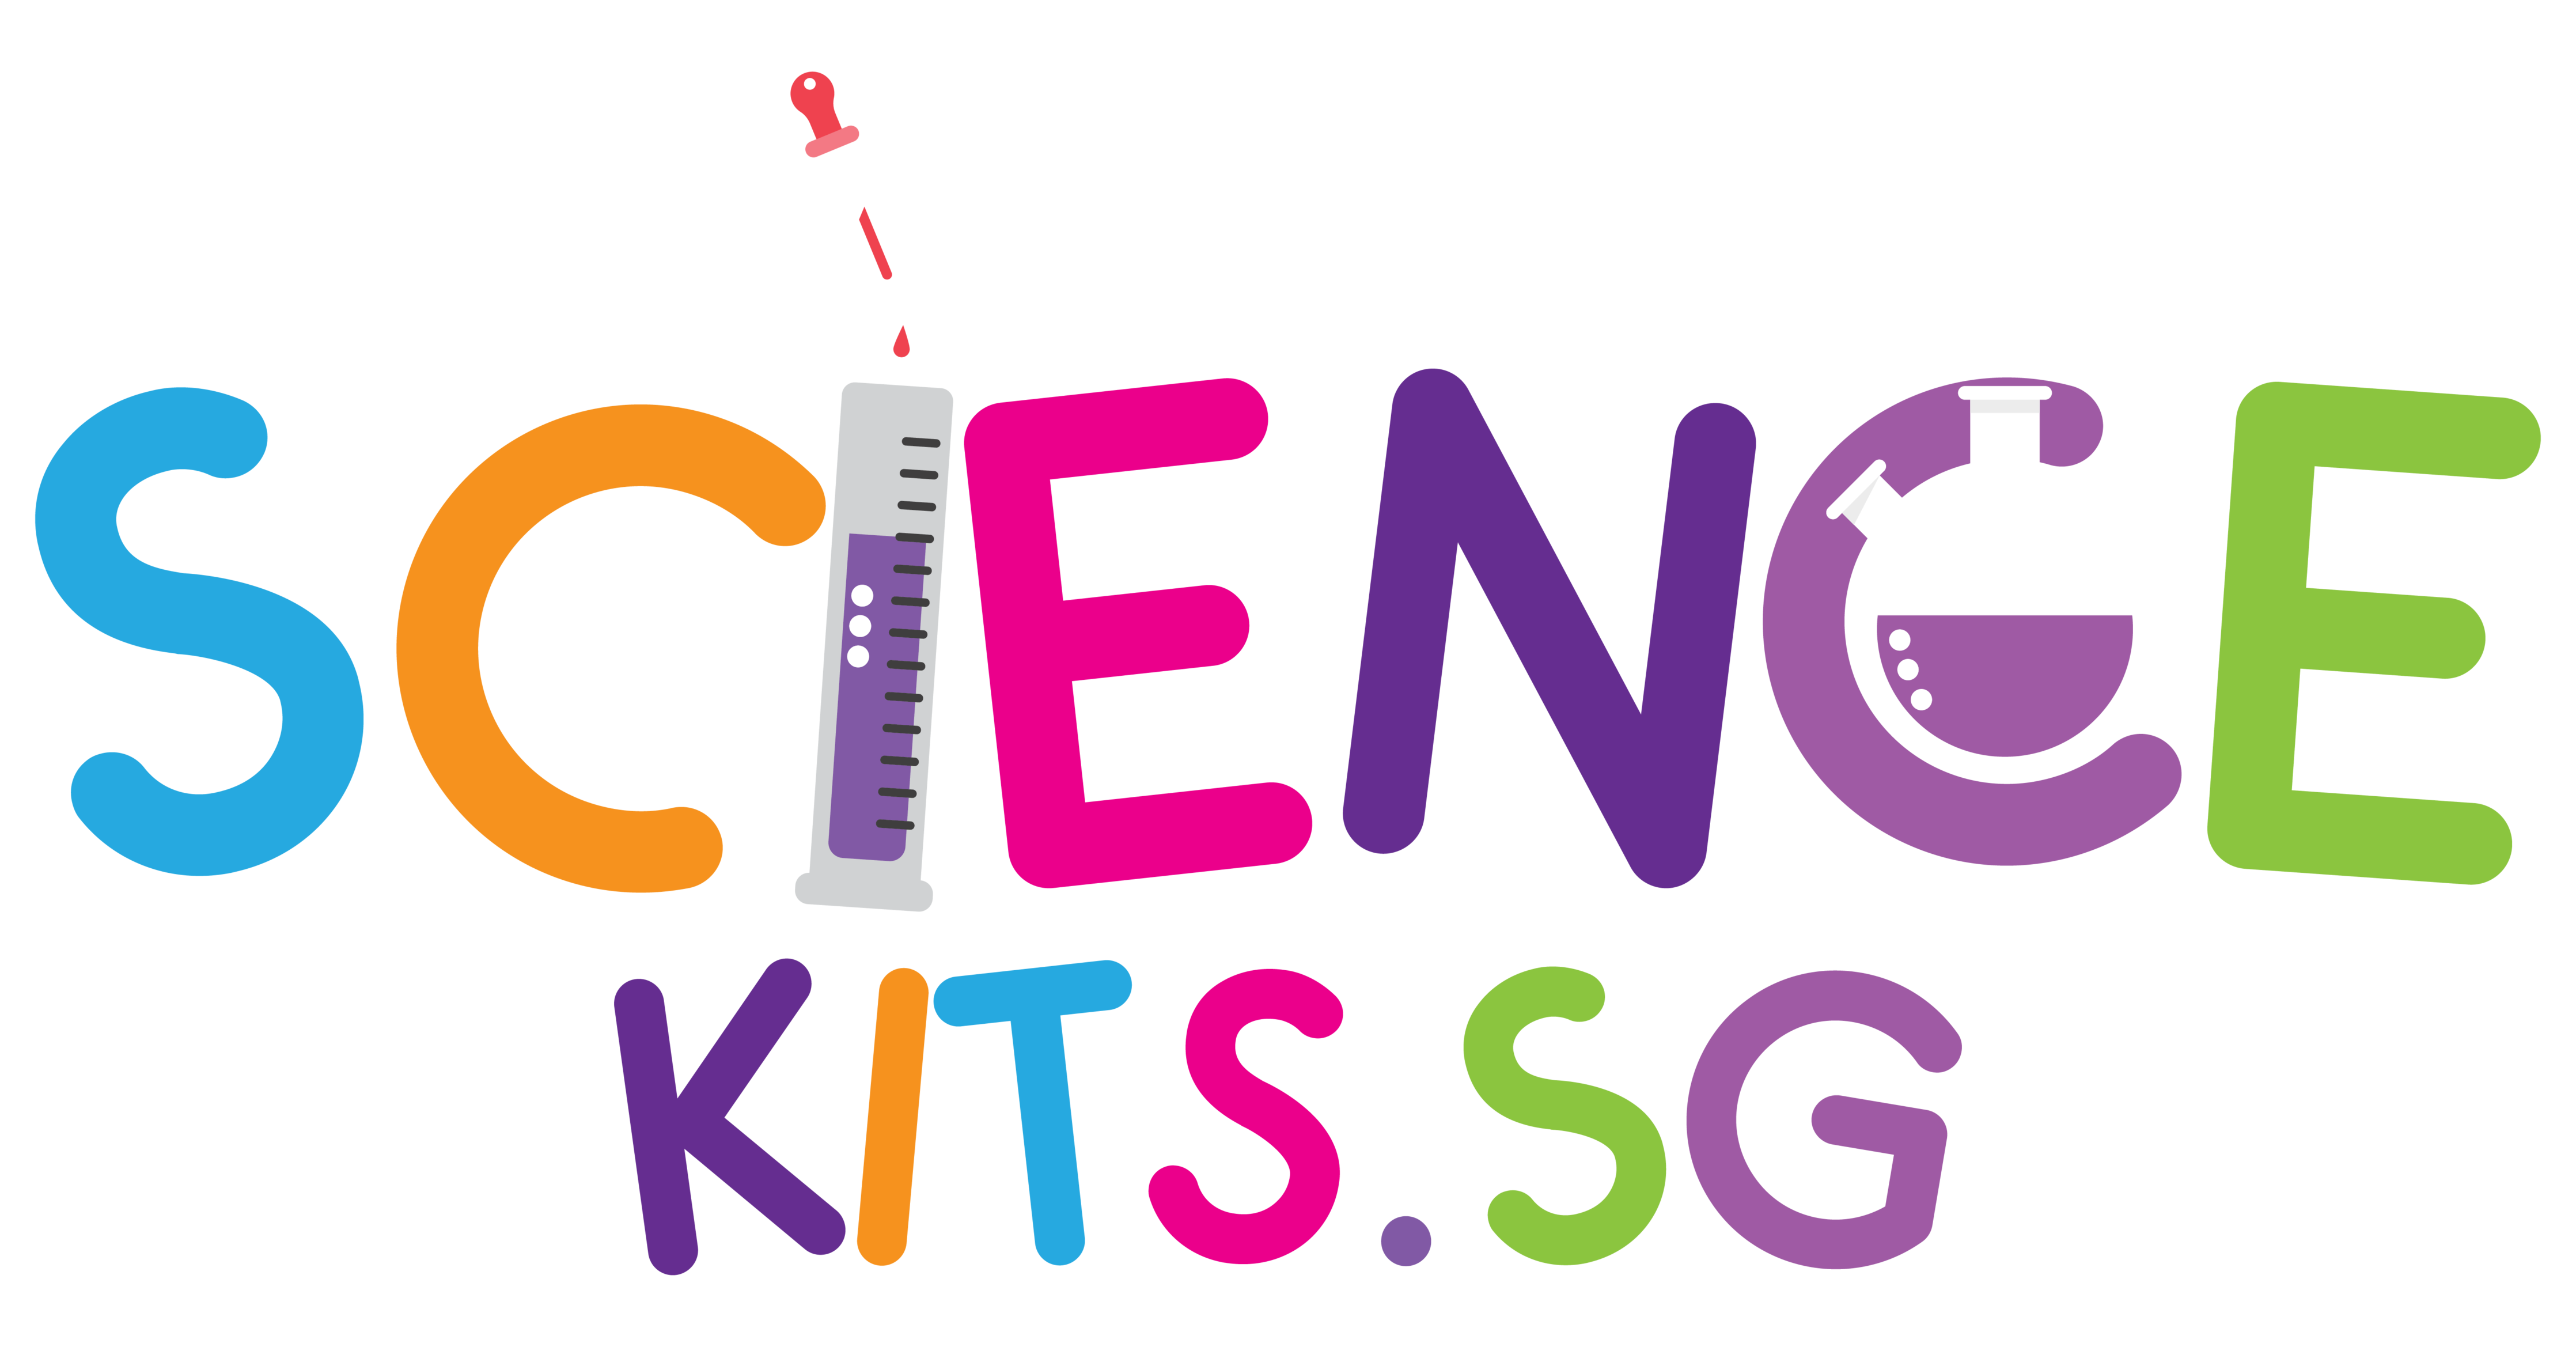 Clementoni Science Fun, Super colorés, Jeu Scientifique 8 Ans, Laboratoire  Experiences, Usine, kit pour Slime, Version en Ita